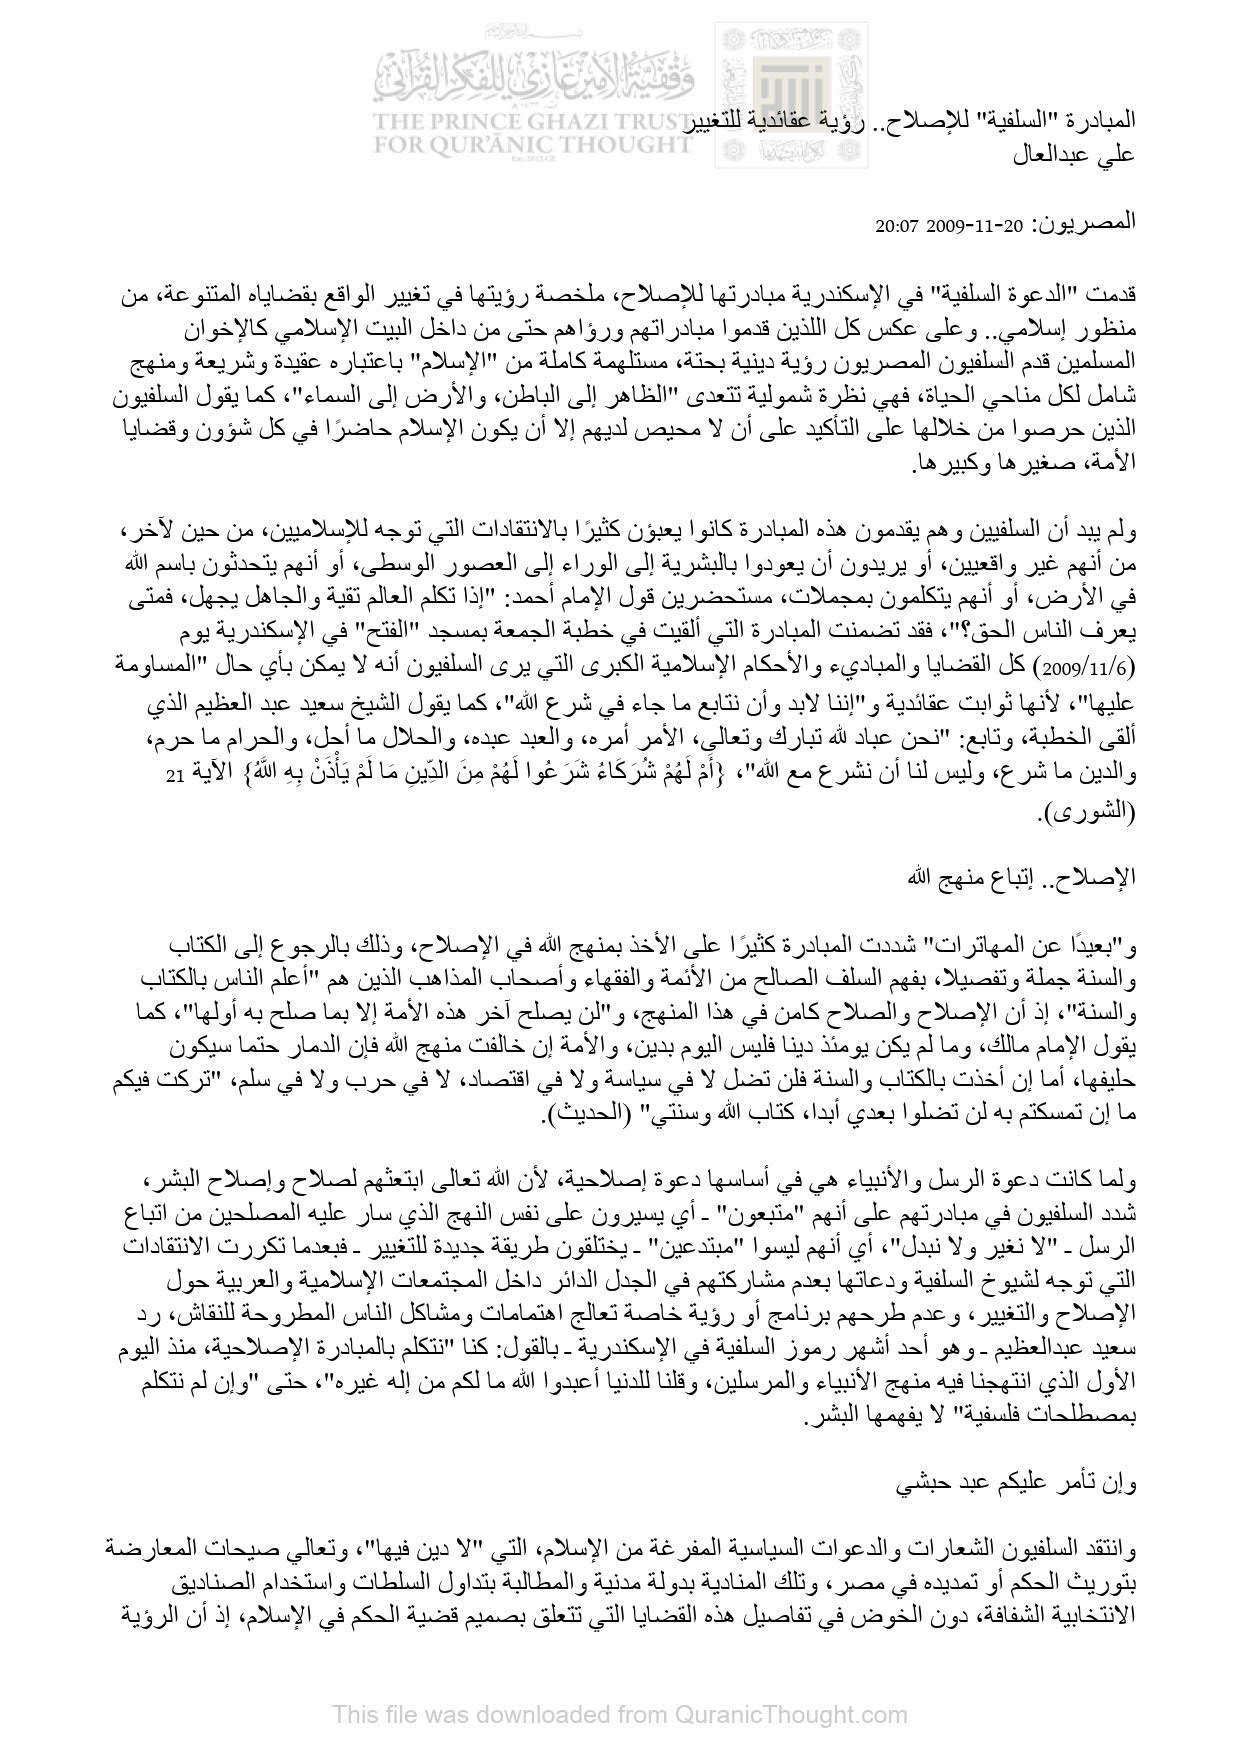 المبادرة السلفية للإصلاح _ رؤية عقائدية للتغيير ( مقالة في جريدة المصريون )